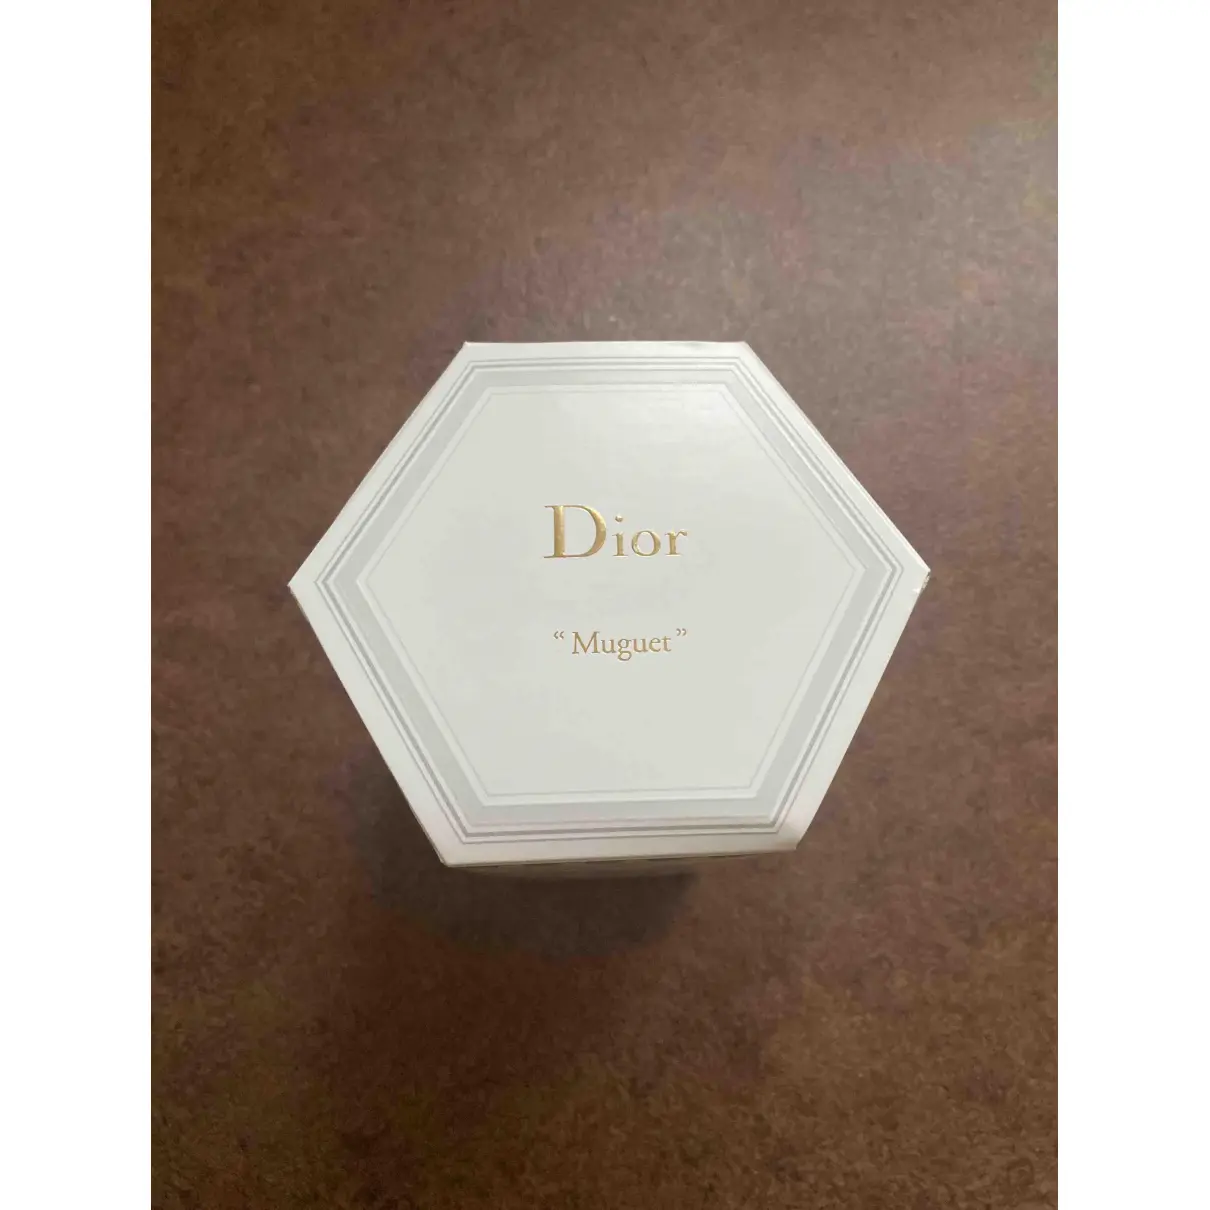 Ceramic candle Dior